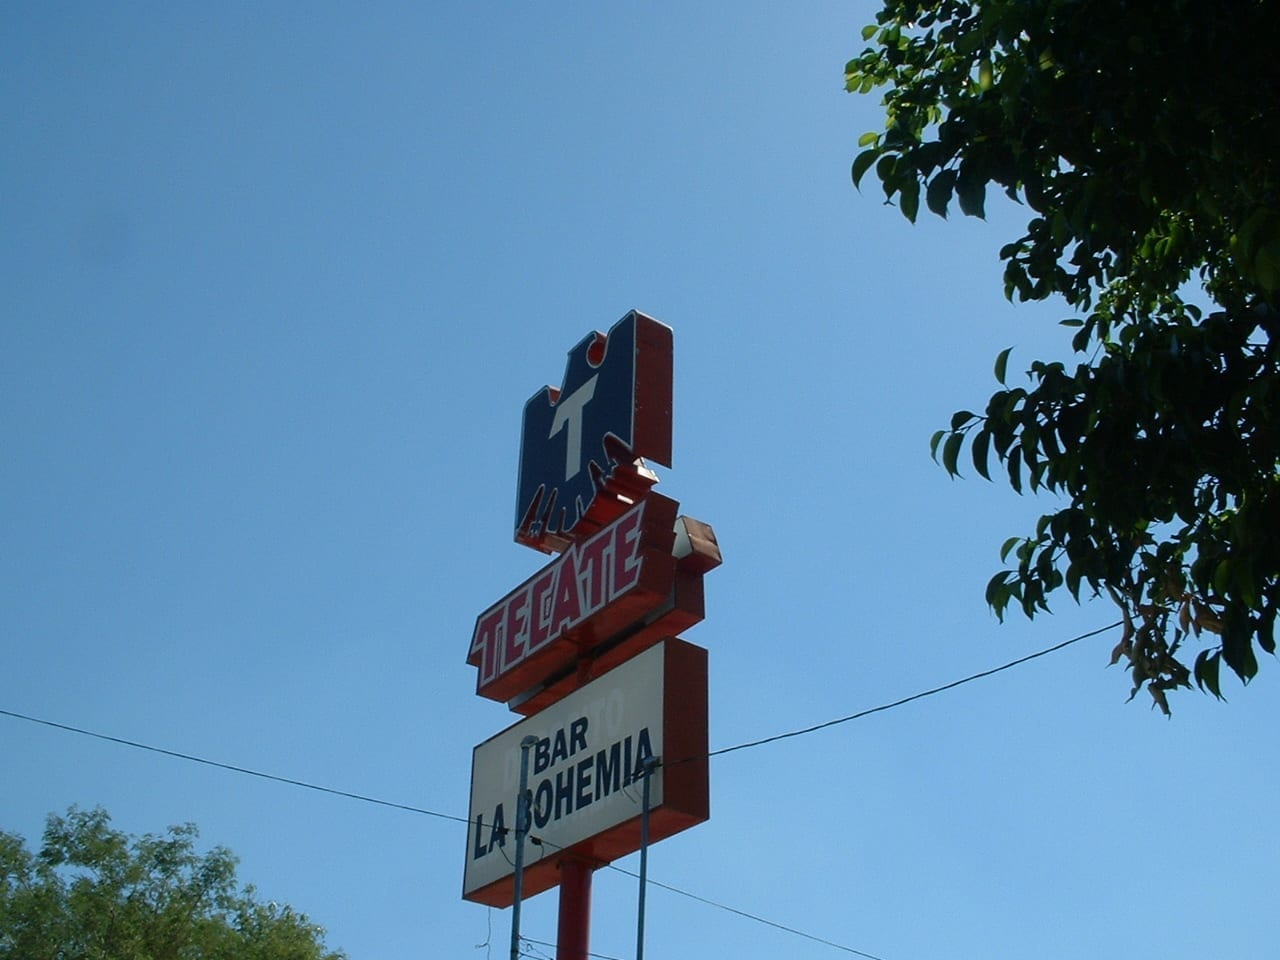 Una de las muchas tiendas de Tecate en Hermosillo, esta está cerca de El Centro. Hermosillo México